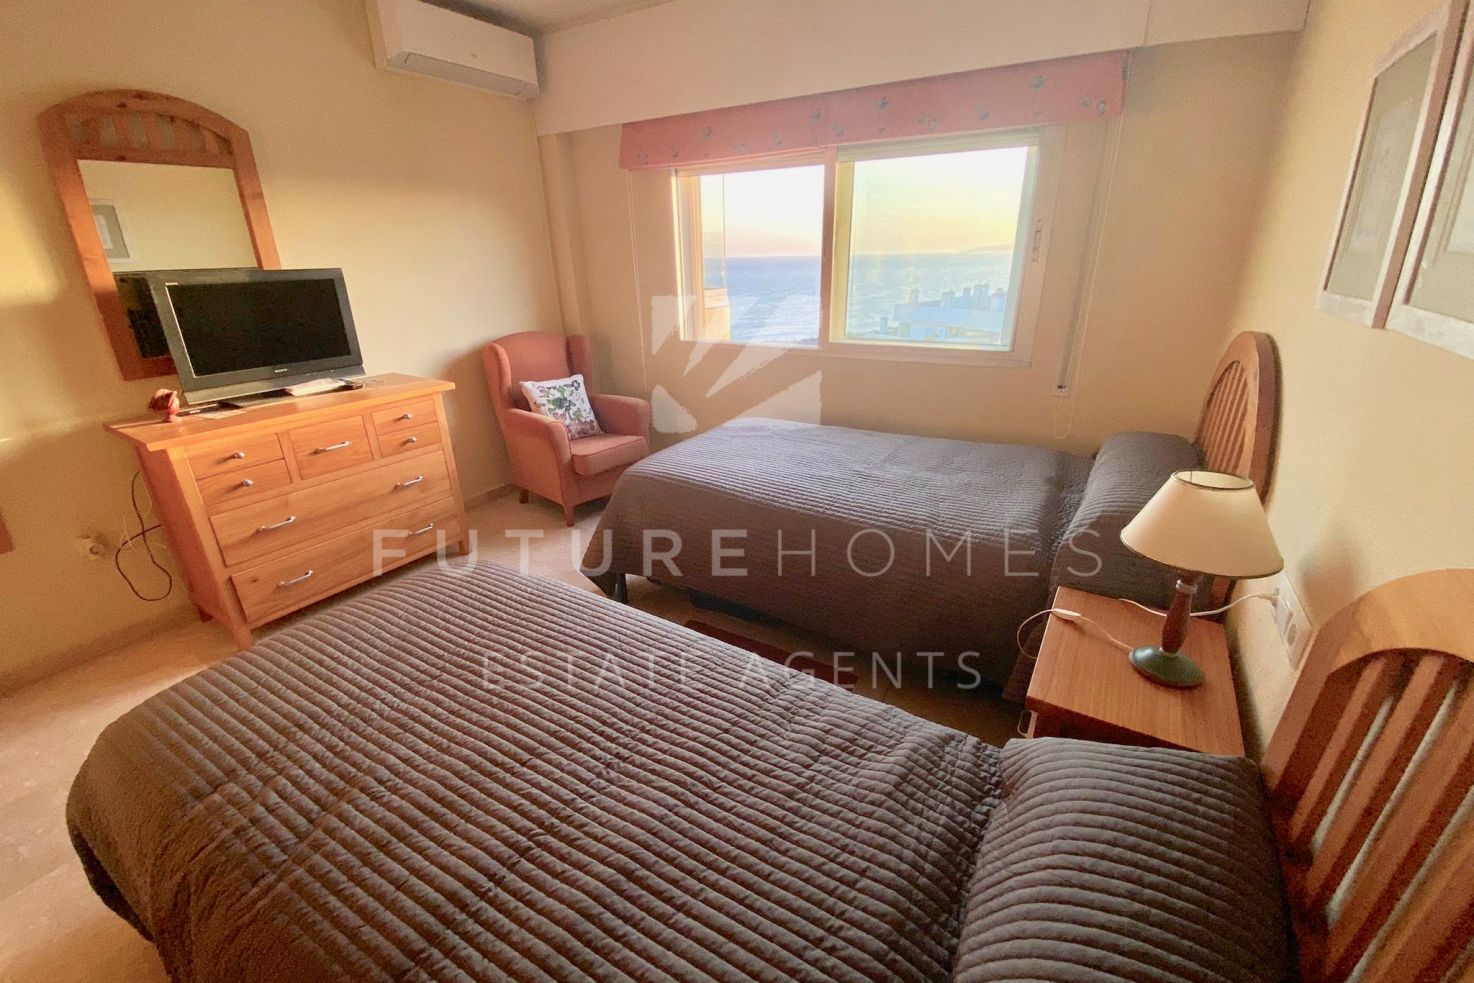 Fantastico apartamento de dos dormitorios en el Puerto de Estepona  con super vistas al mar!